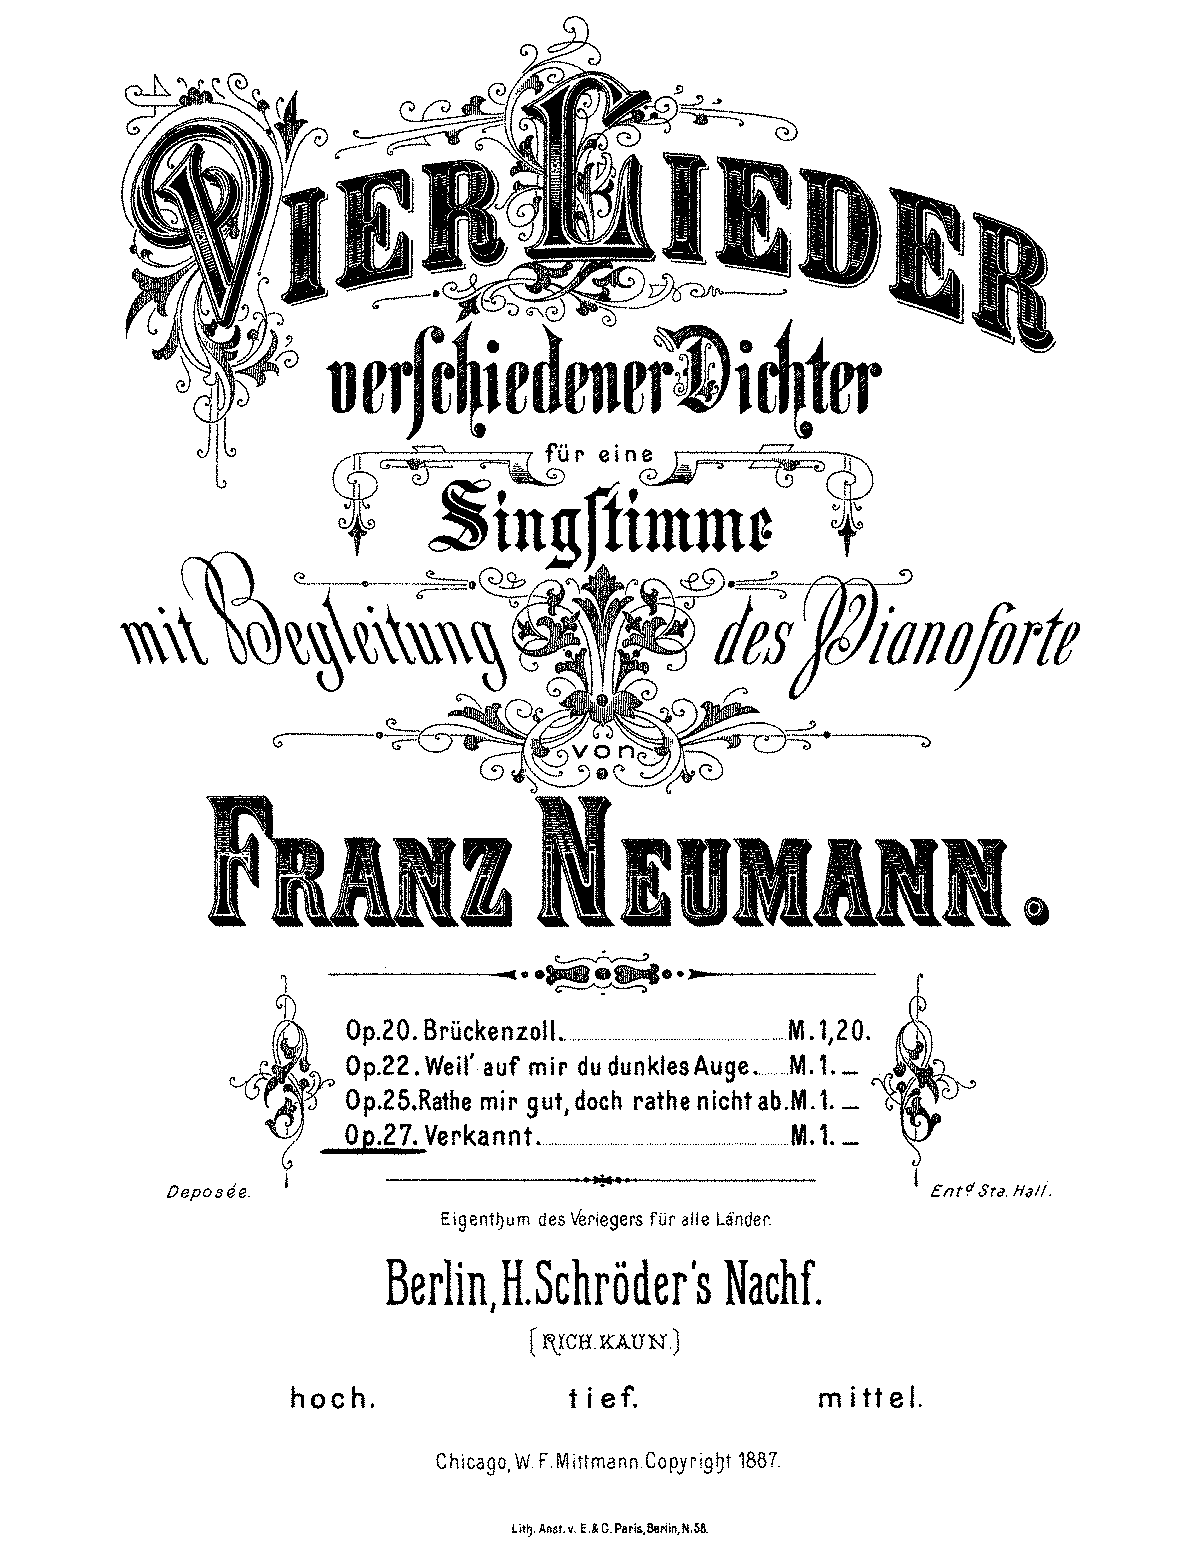 Verkannt, Op.27 (Neumann, Franz) - IMSLP